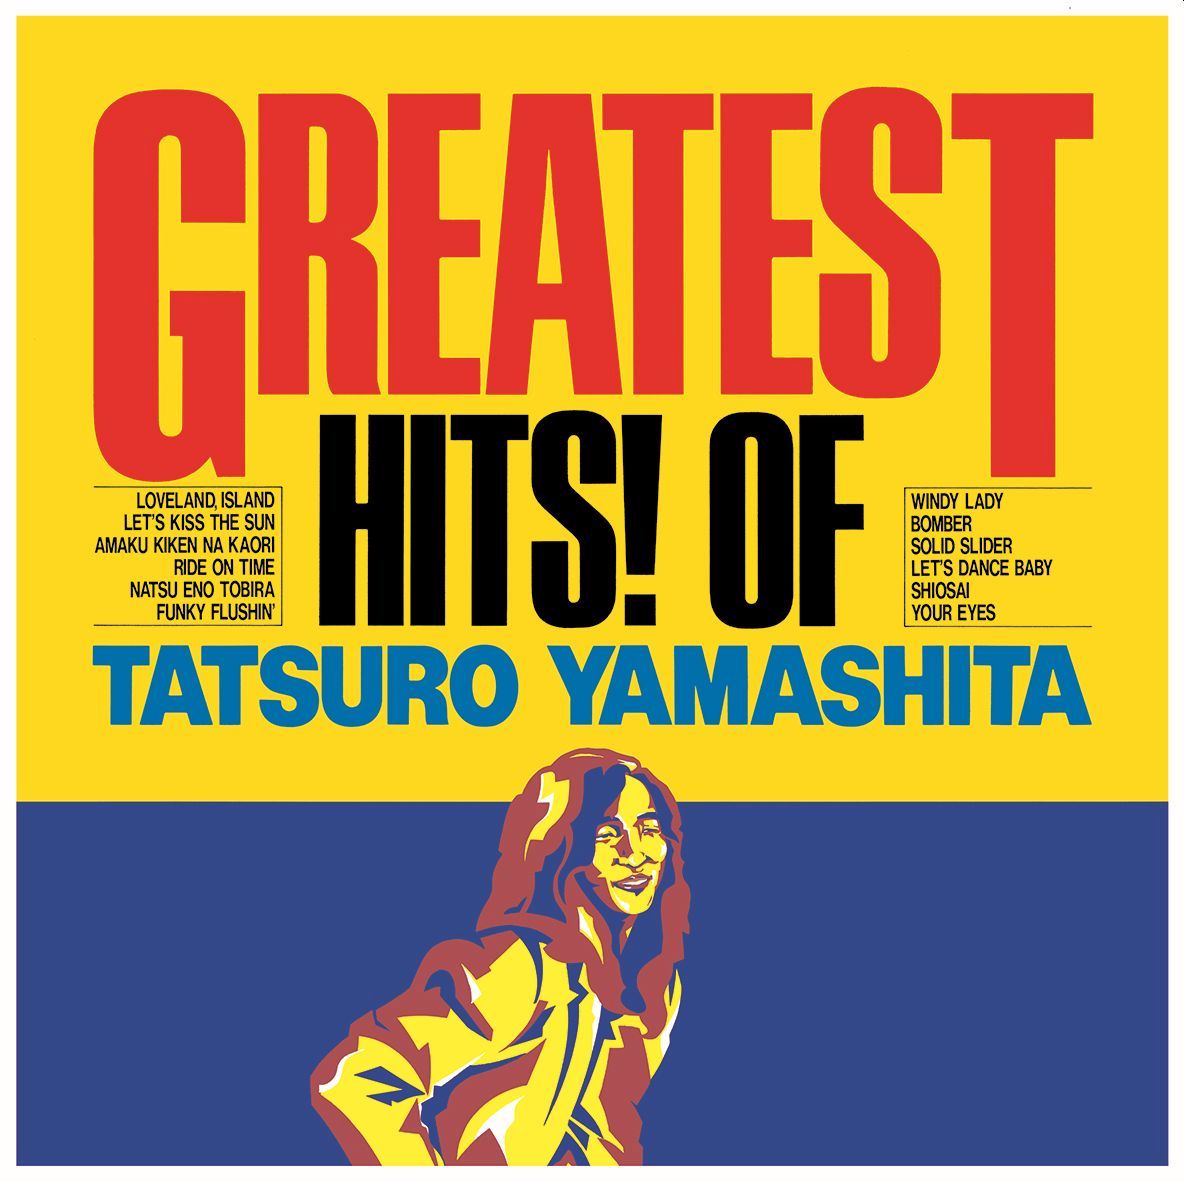 【10月中旬以降発送】GREATEST HITS! OF TATSURO YAMASHITA (完全生産限定盤)【アナログ盤】